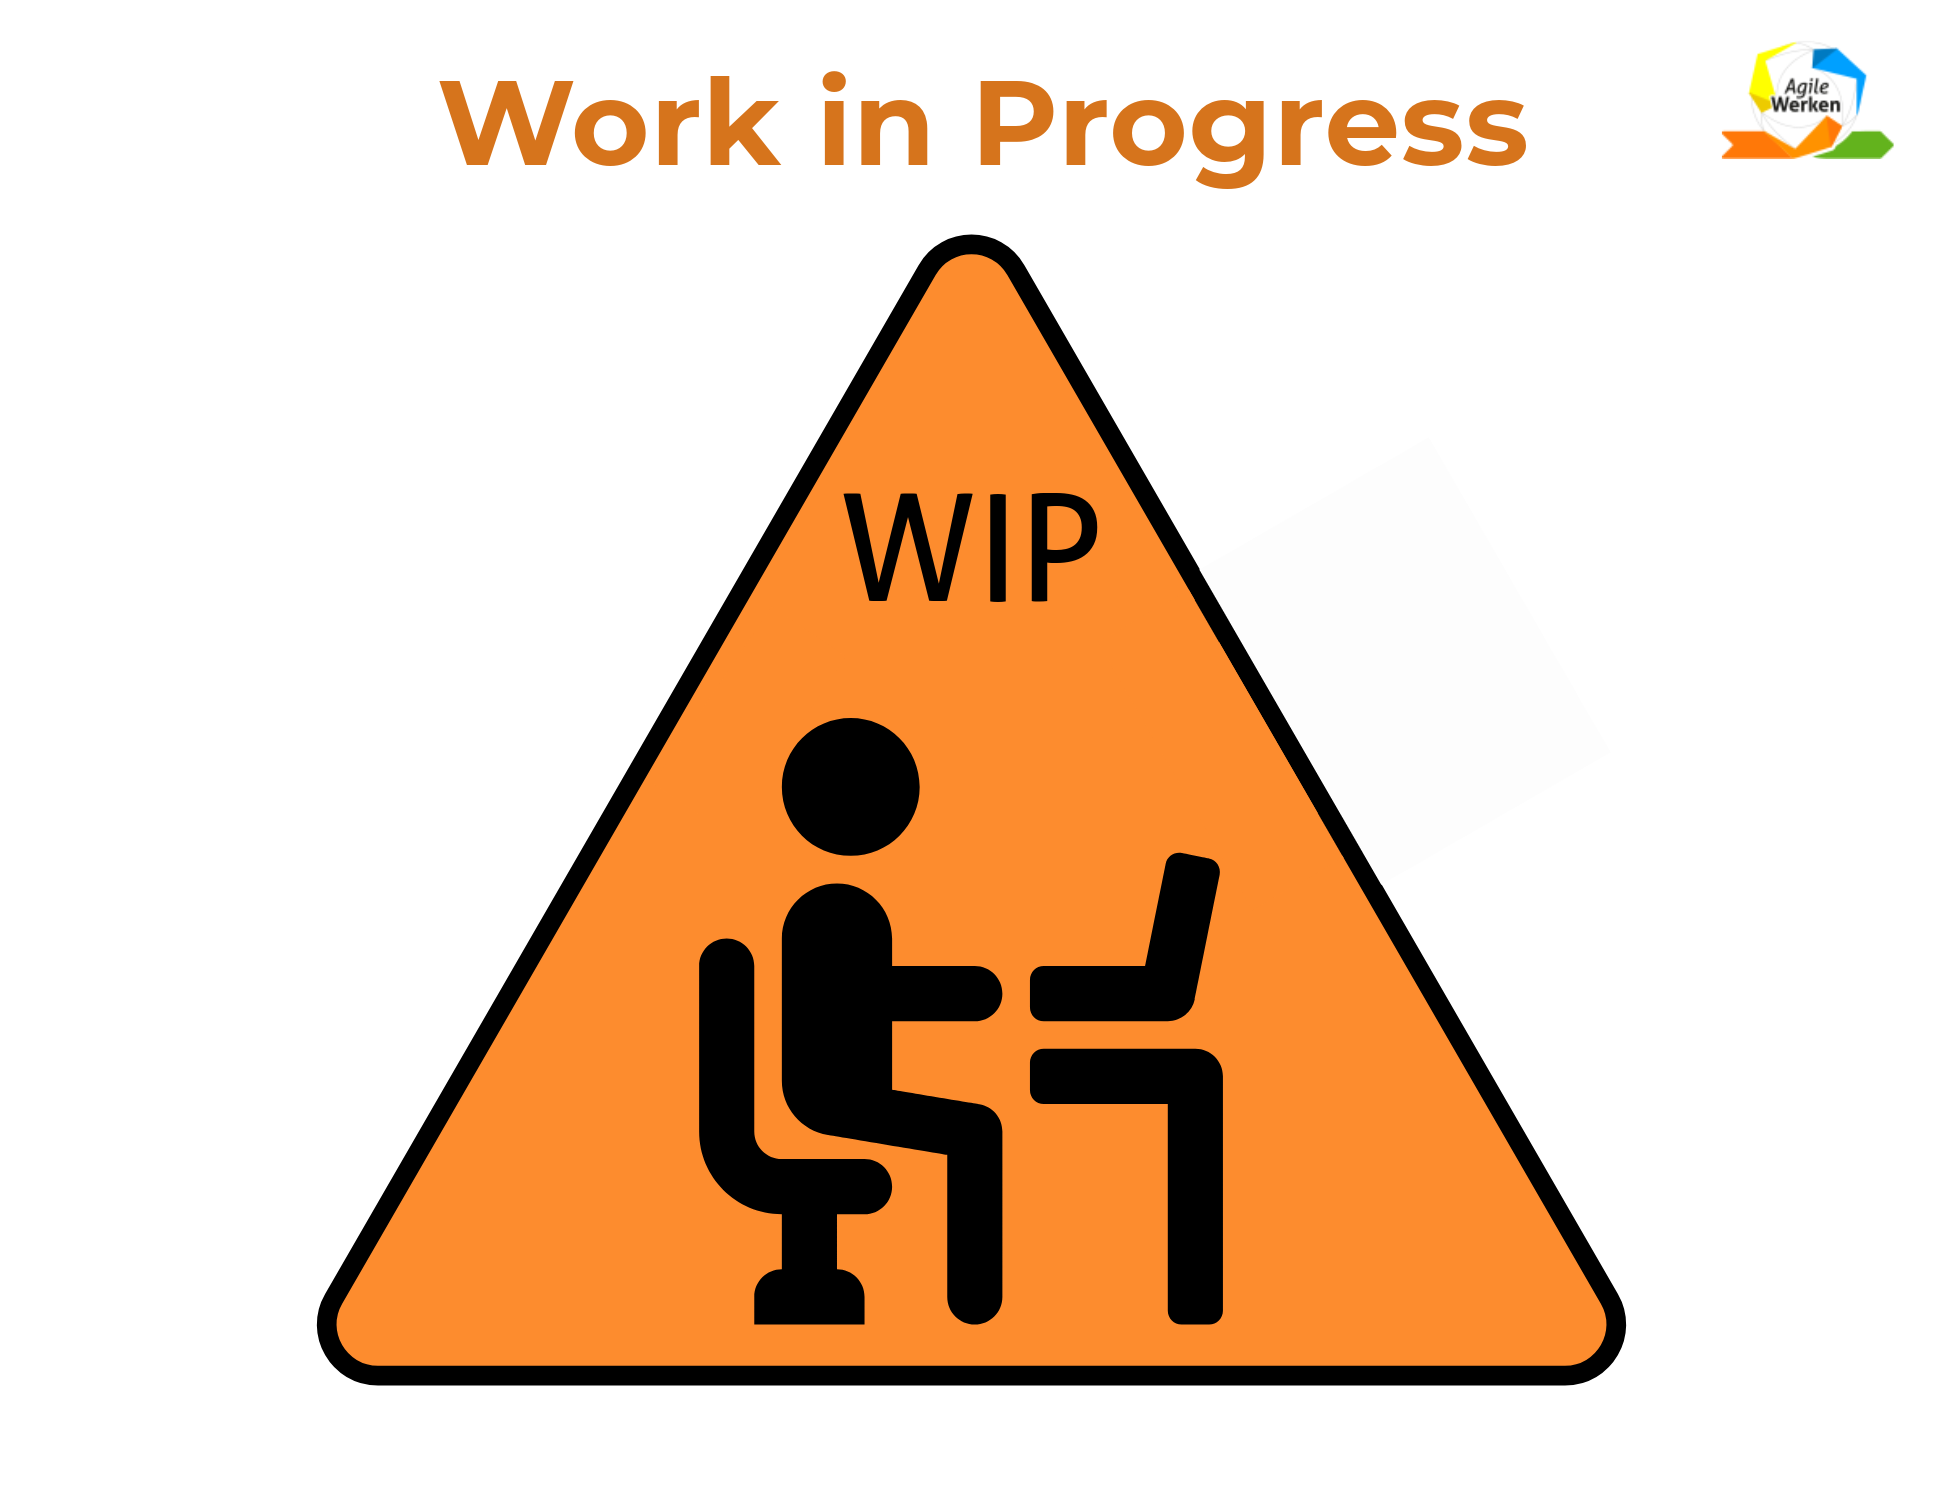 WIP: Work in Progress